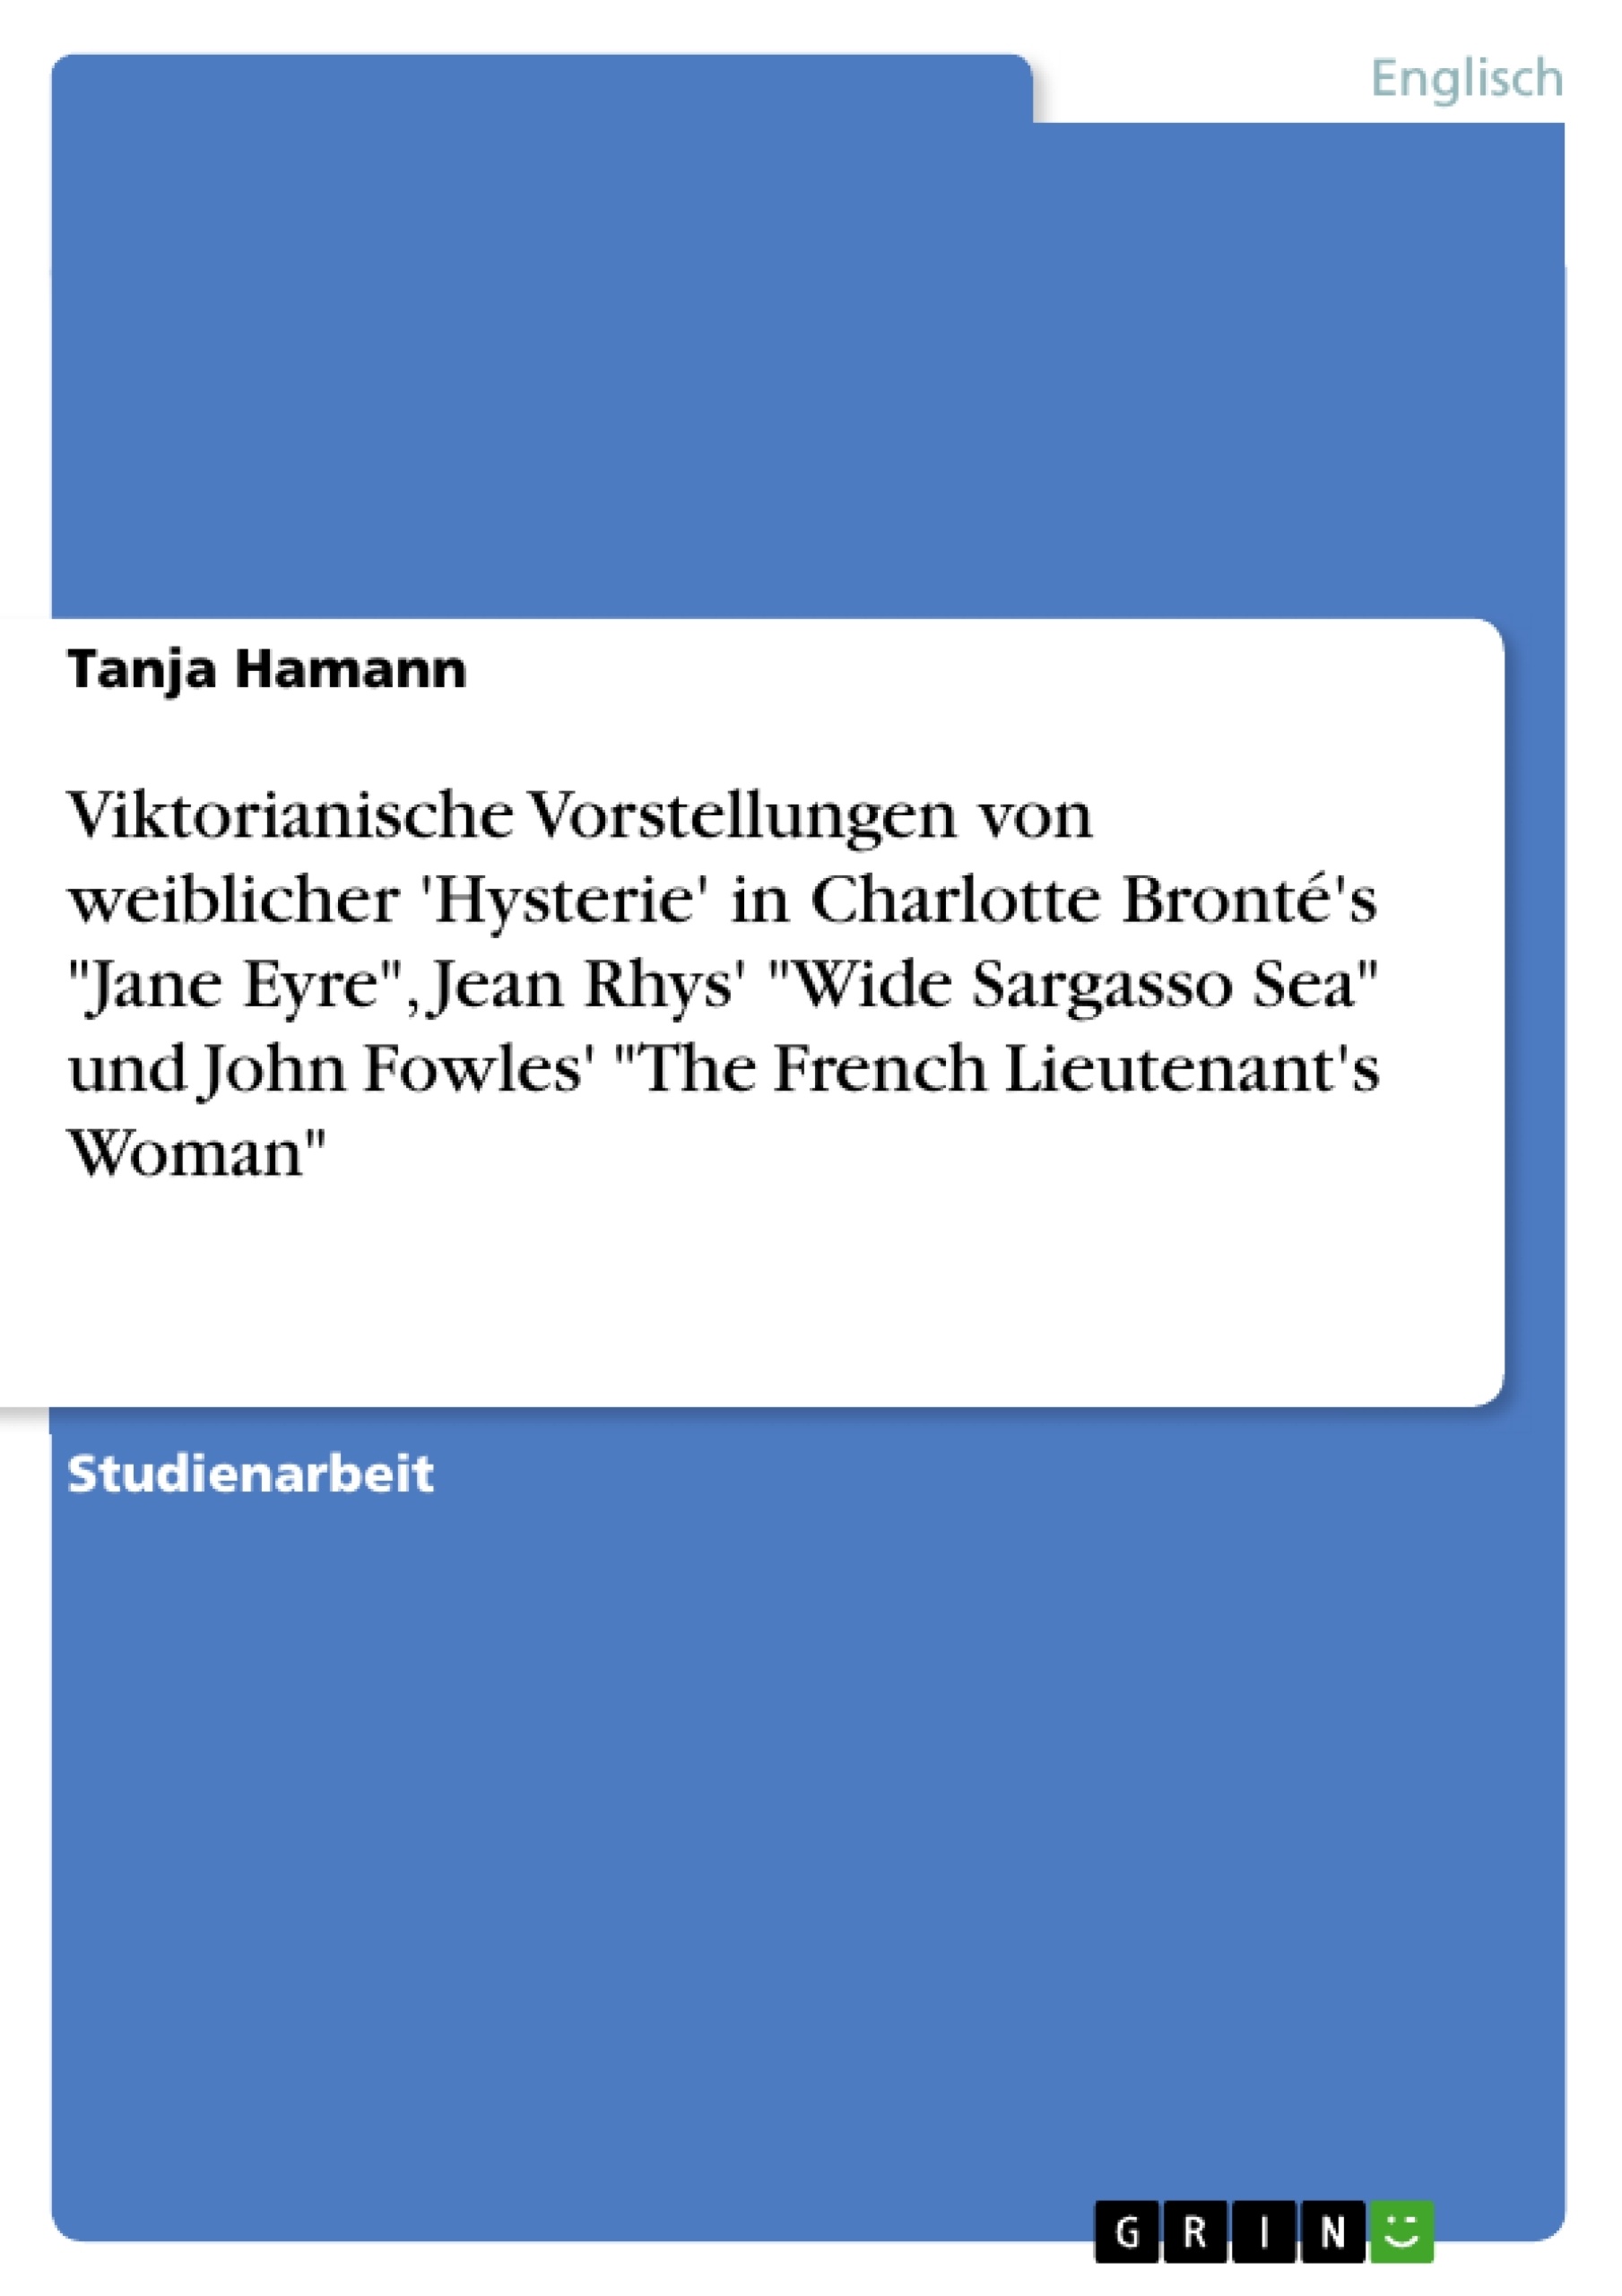 Titel: Viktorianische Vorstellungen von weiblicher 'Hysterie'  in Charlotte Bronté's "Jane Eyre", Jean Rhys' "Wide Sargasso Sea" und John Fowles'  "The French Lieutenant's Woman"